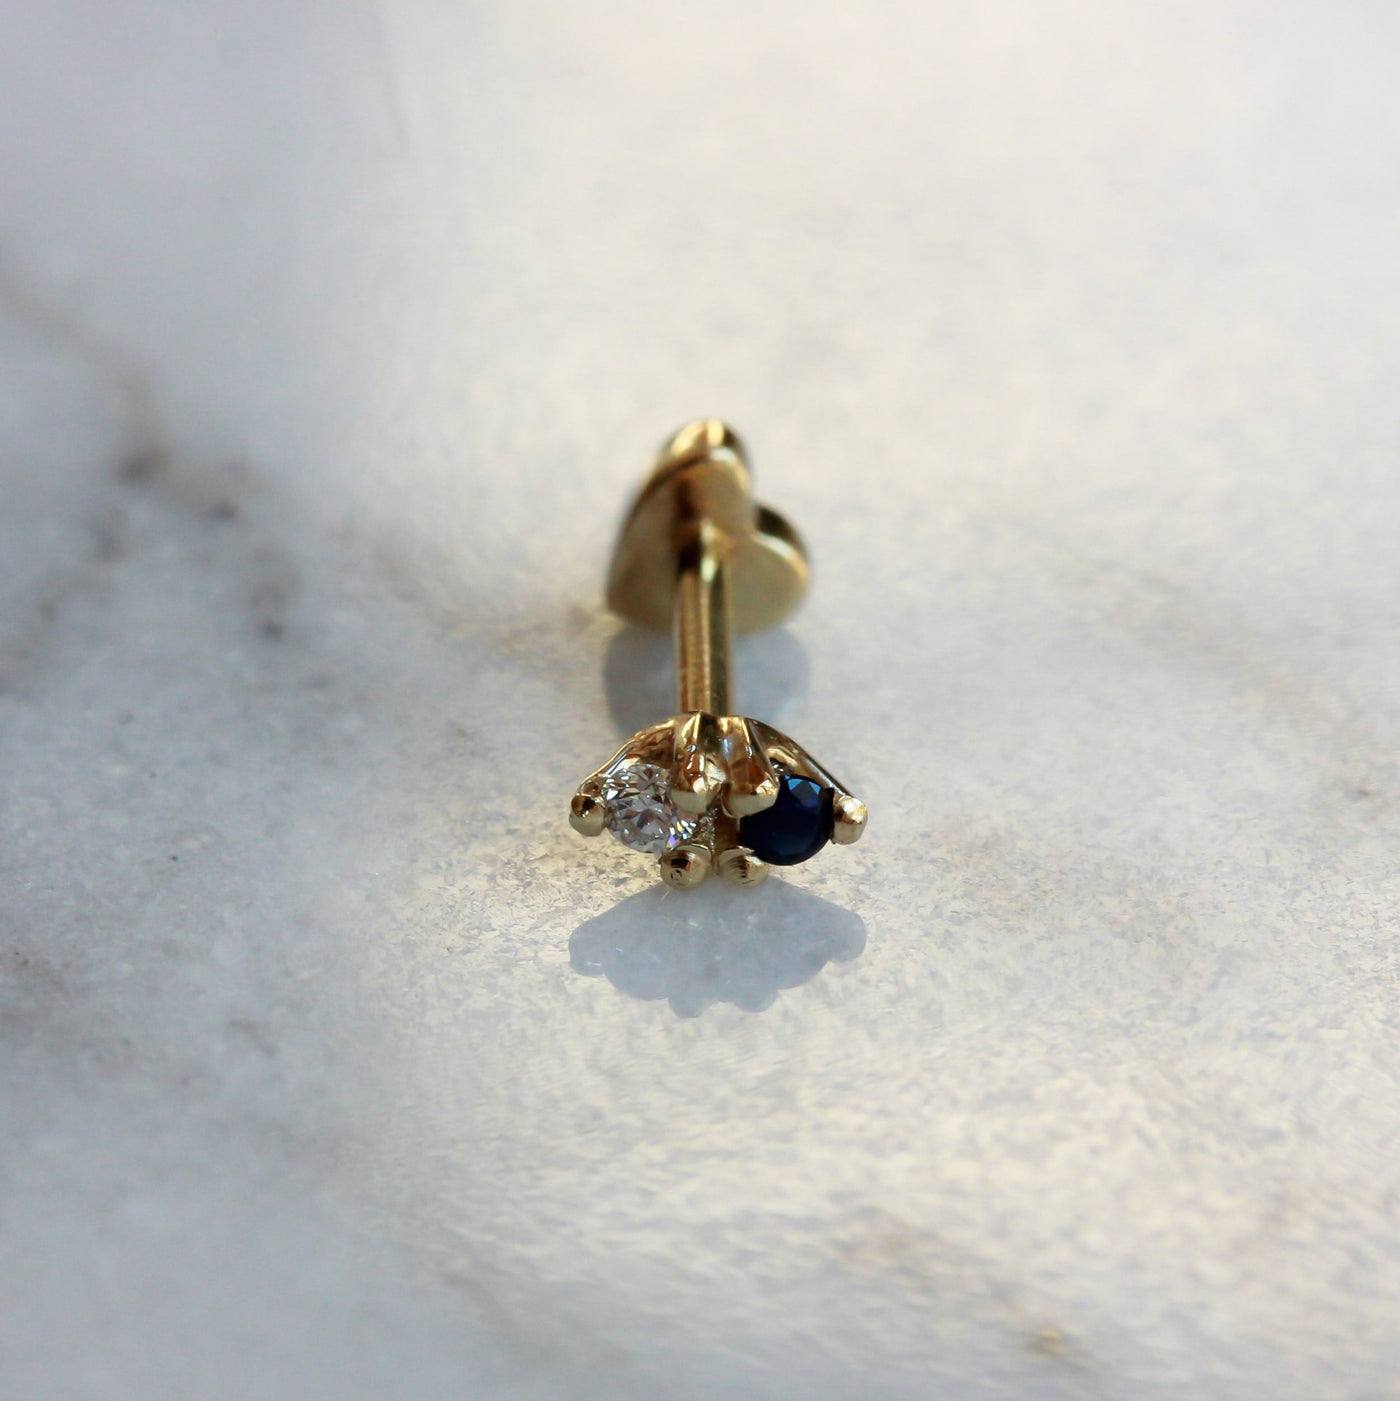 עגיל פירסינג נפטון קטן ספיר ויהלום זהב 14K Earrings 